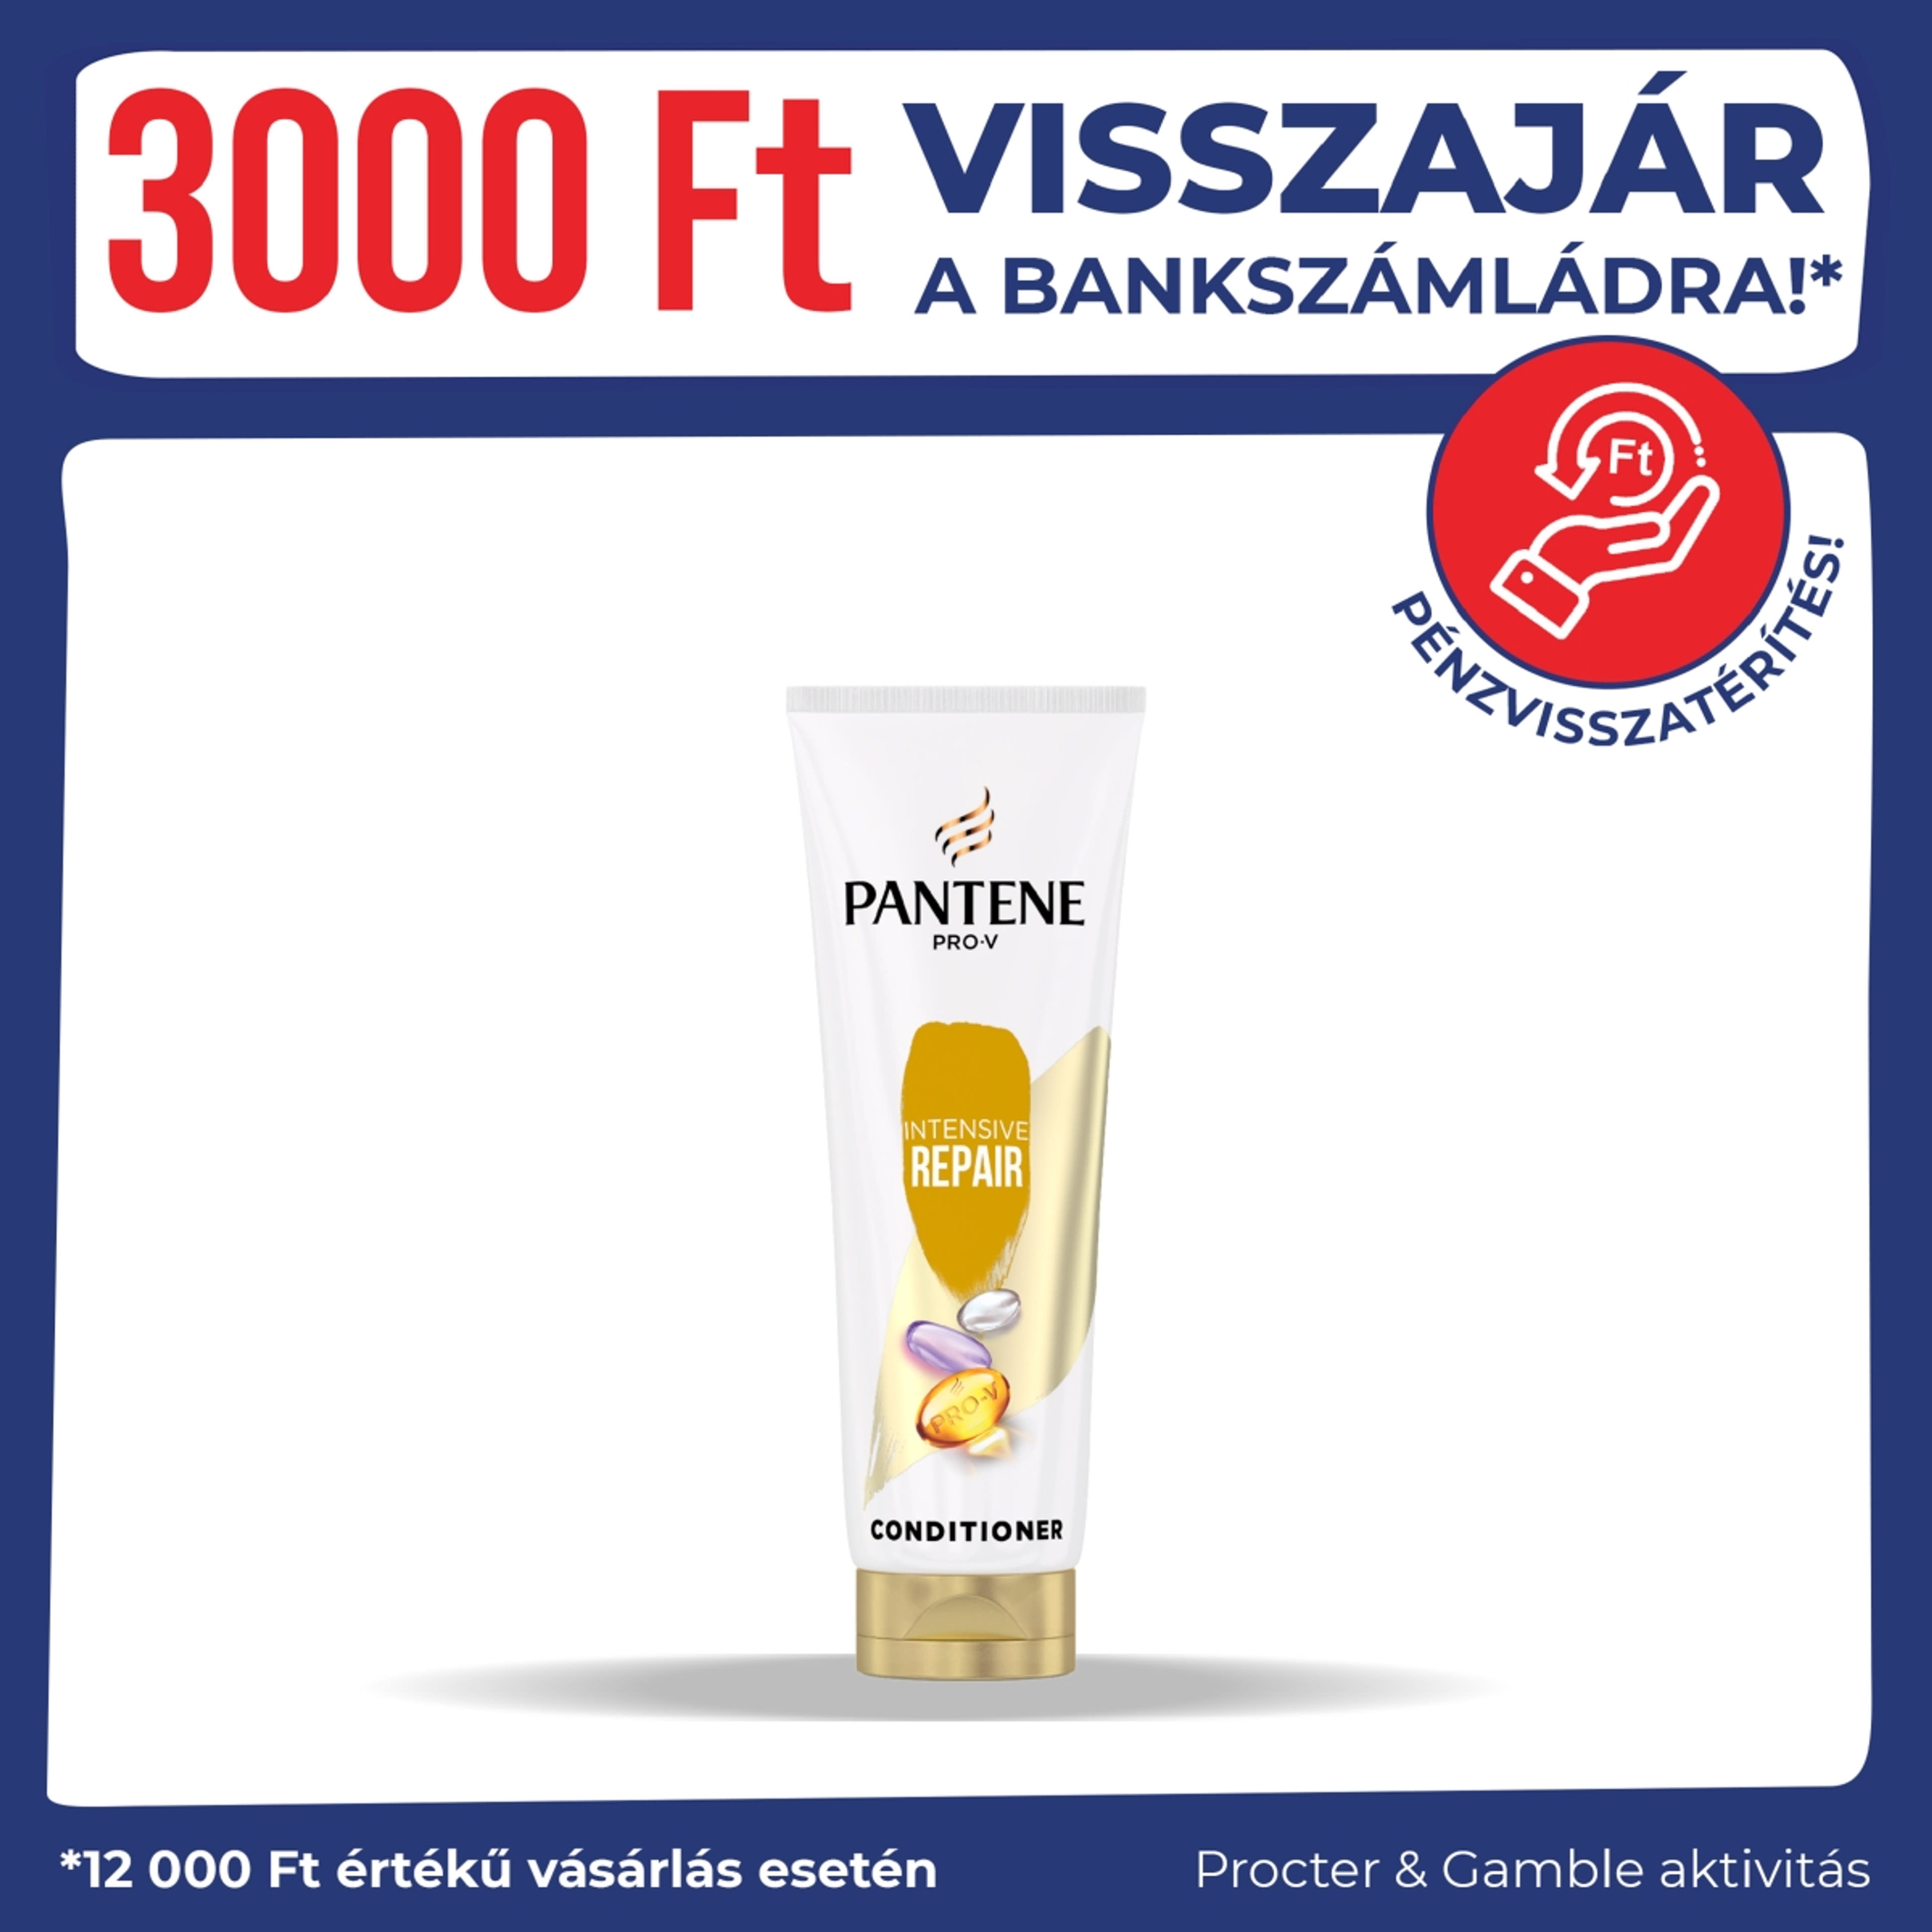 Pantene balzsam repair & protect - 200 ml